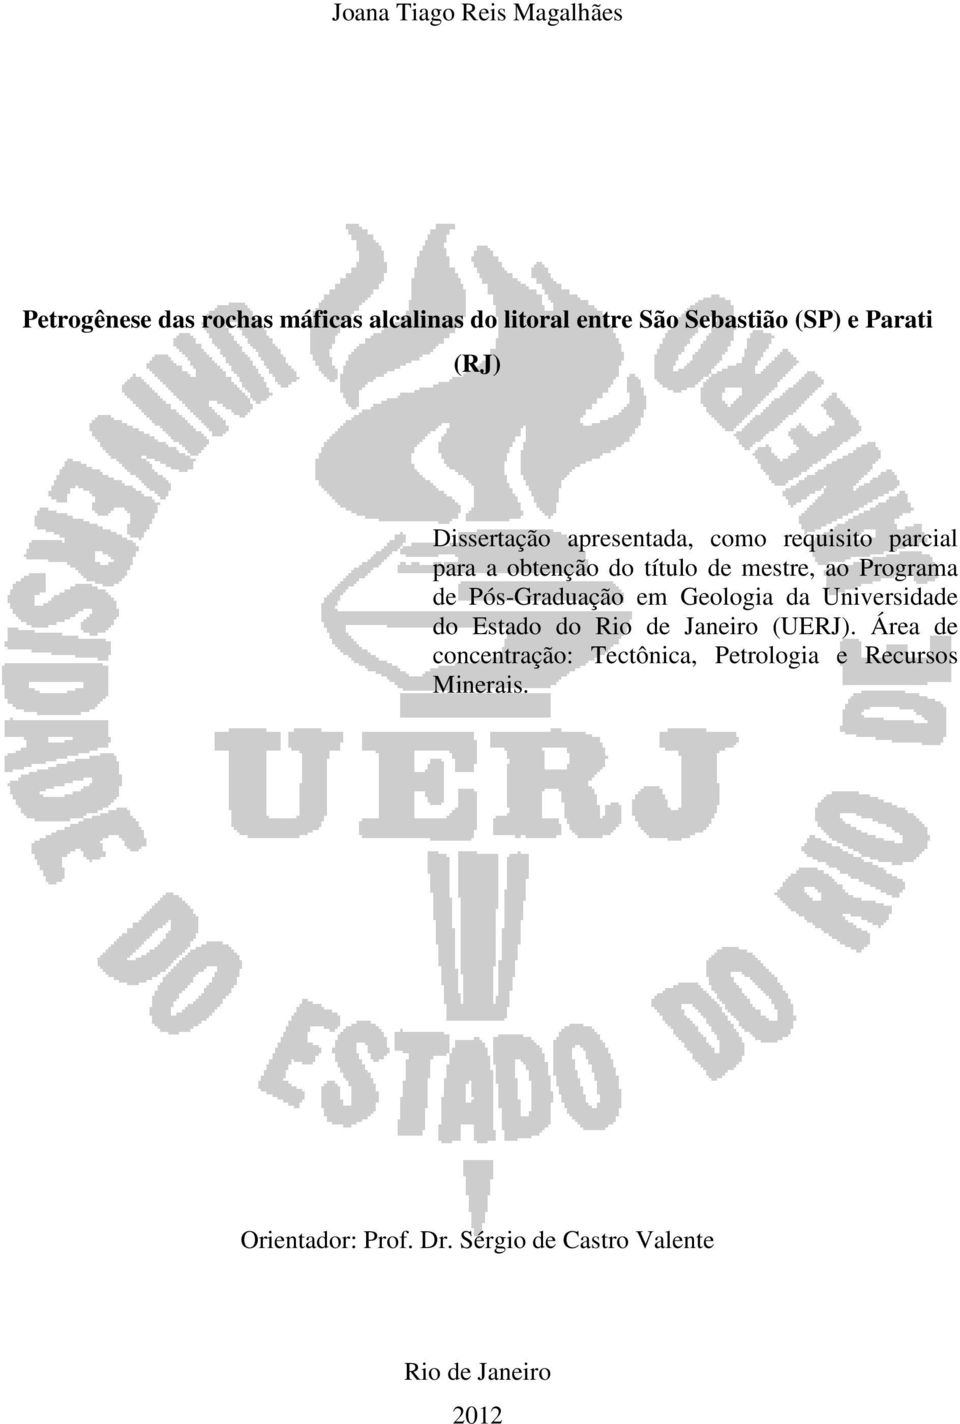 Programa de Pós-Graduação em Geologia da Universidade do Estado do Rio de Janeiro (UERJ).